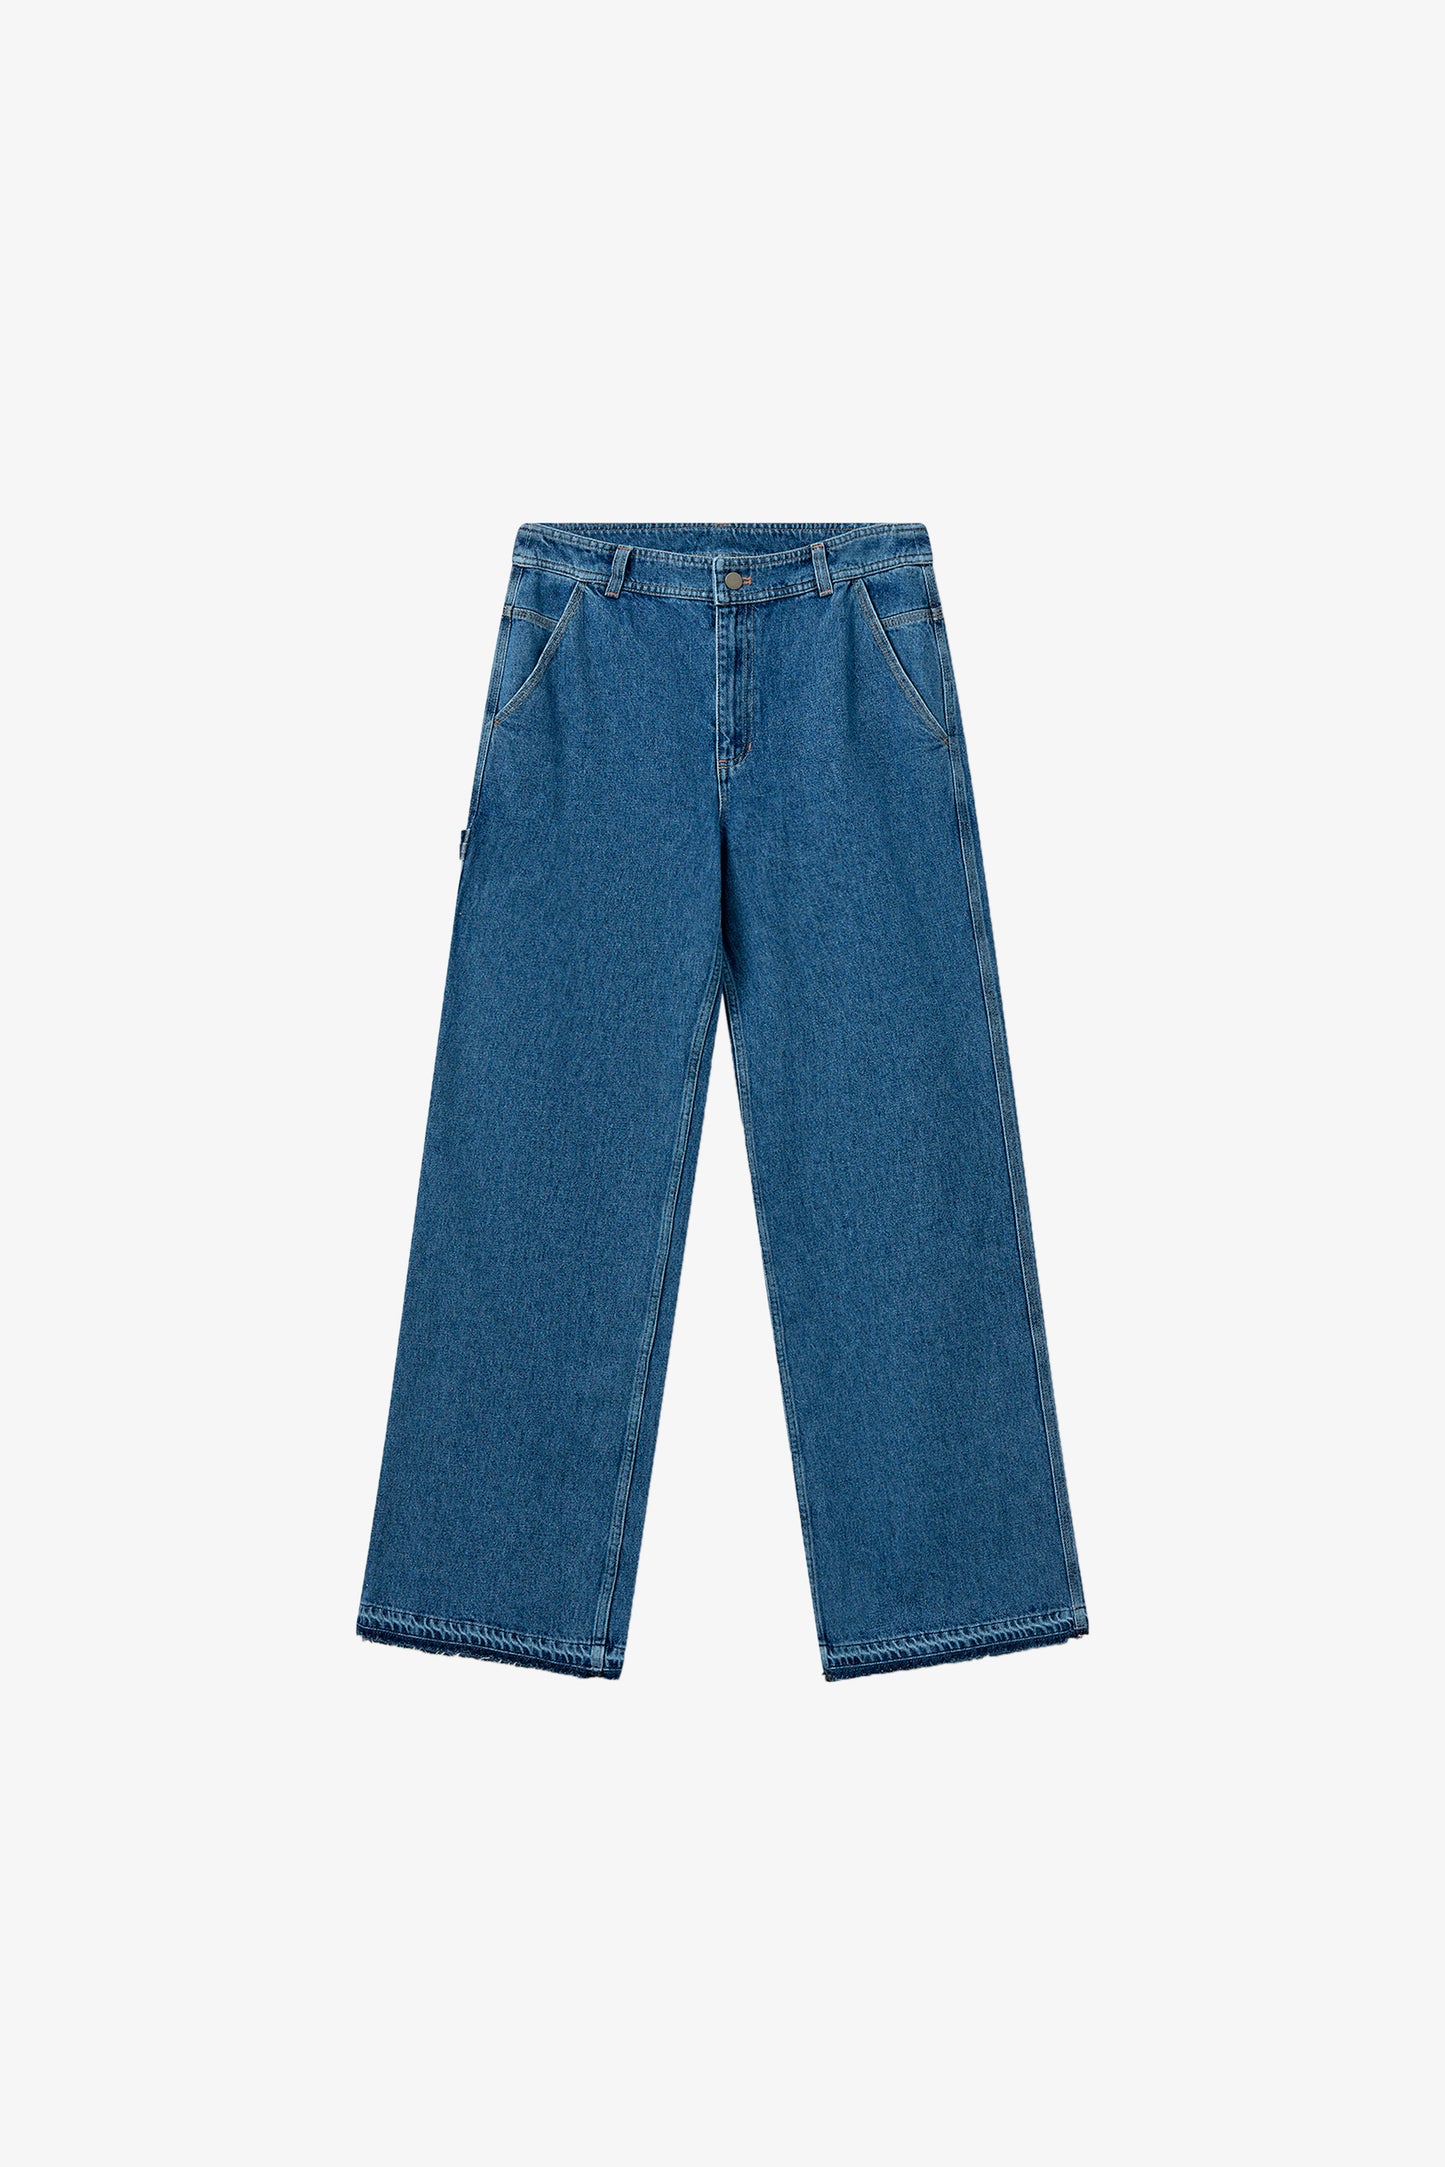 H2OFagerholt Aljinz Jeans Pants 2526 Vintage Blue Denim